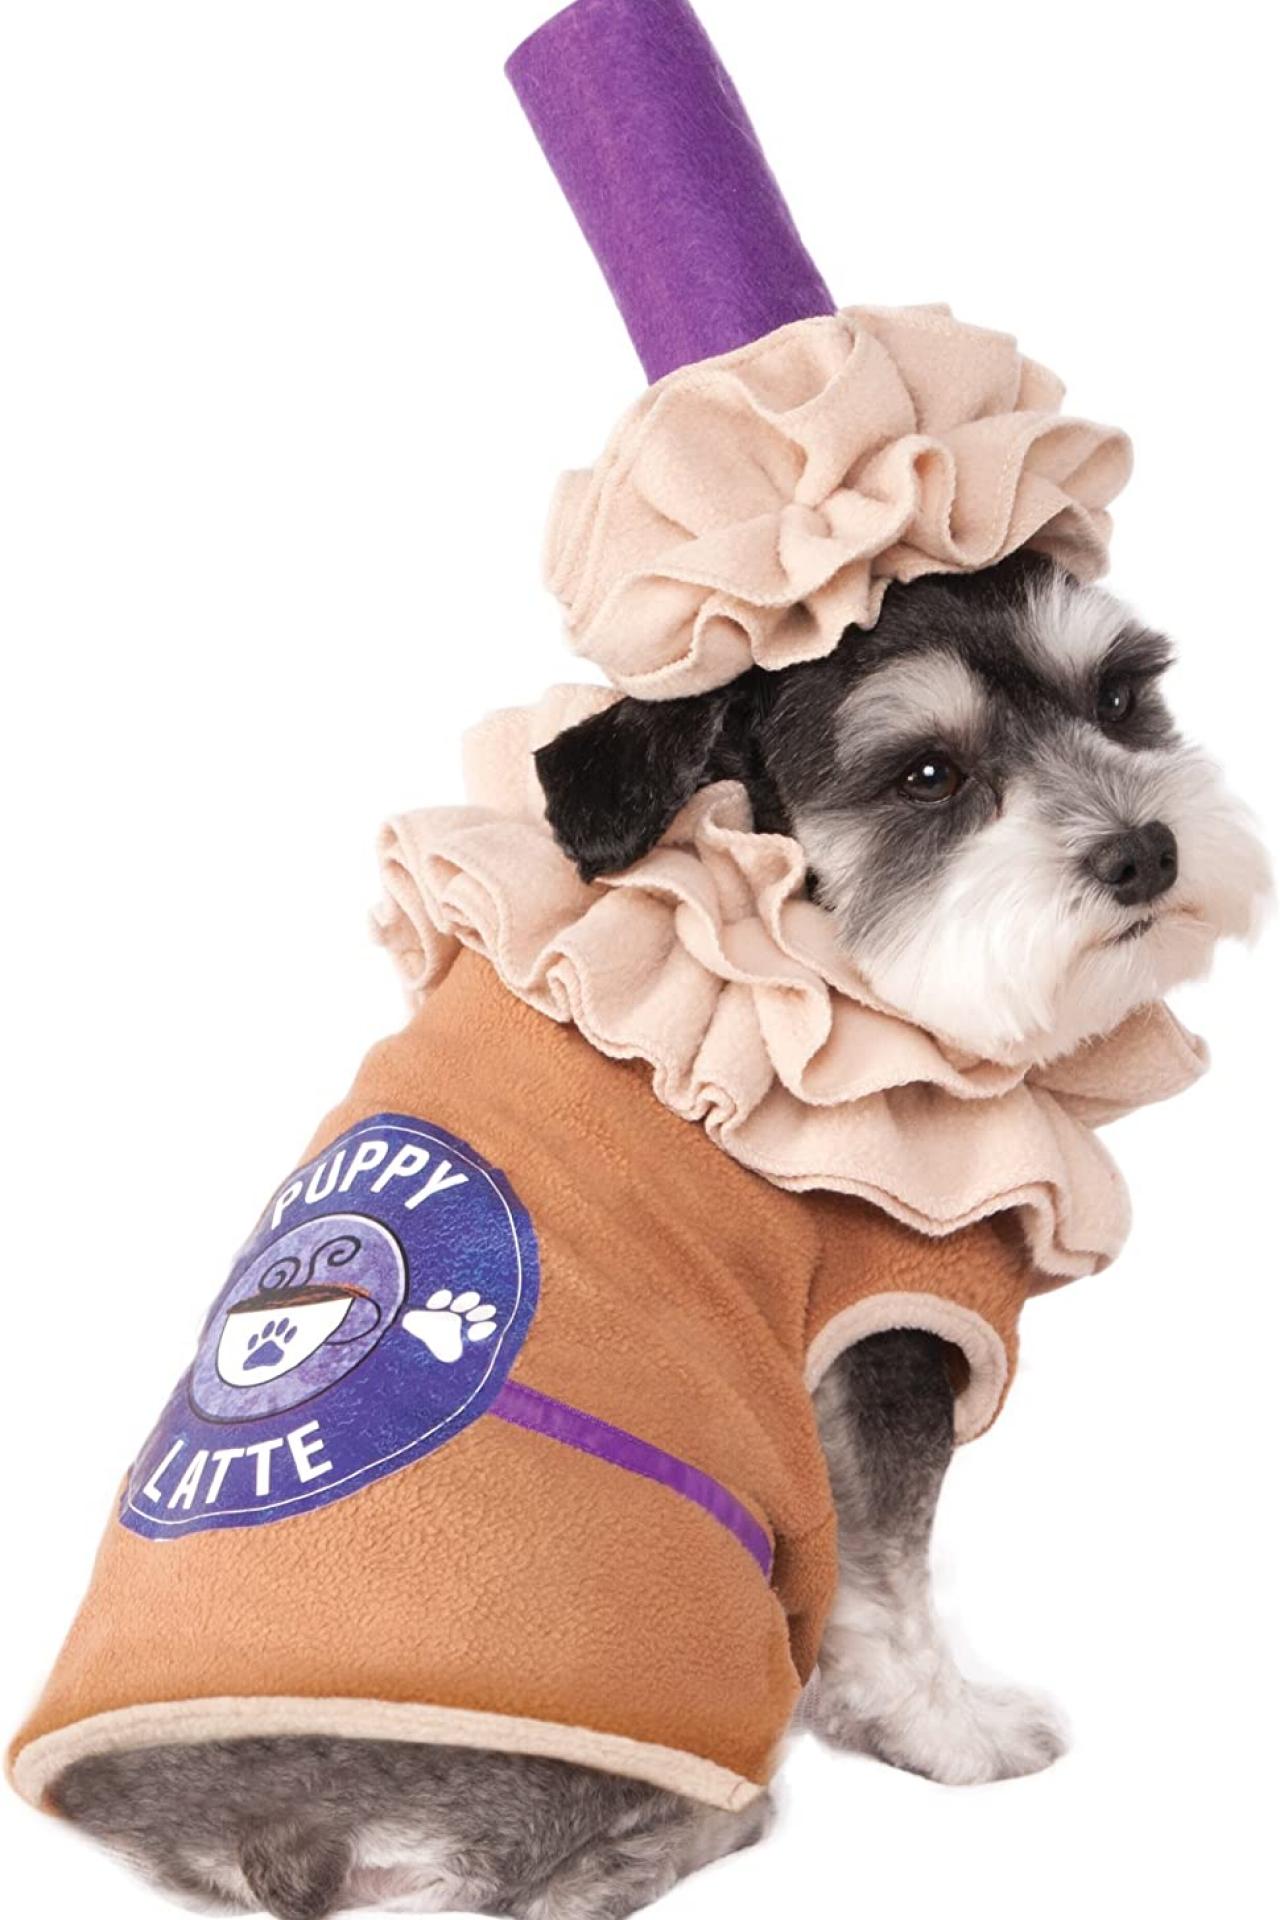 https://tlc.sndimg.com/content/dam/images/tlc/tlcme/fullset/2022/september/RX_puppy-latte-dog-costume.jpg.rend.hgtvcom.1280.1920.suffix/1664900829429.jpeg